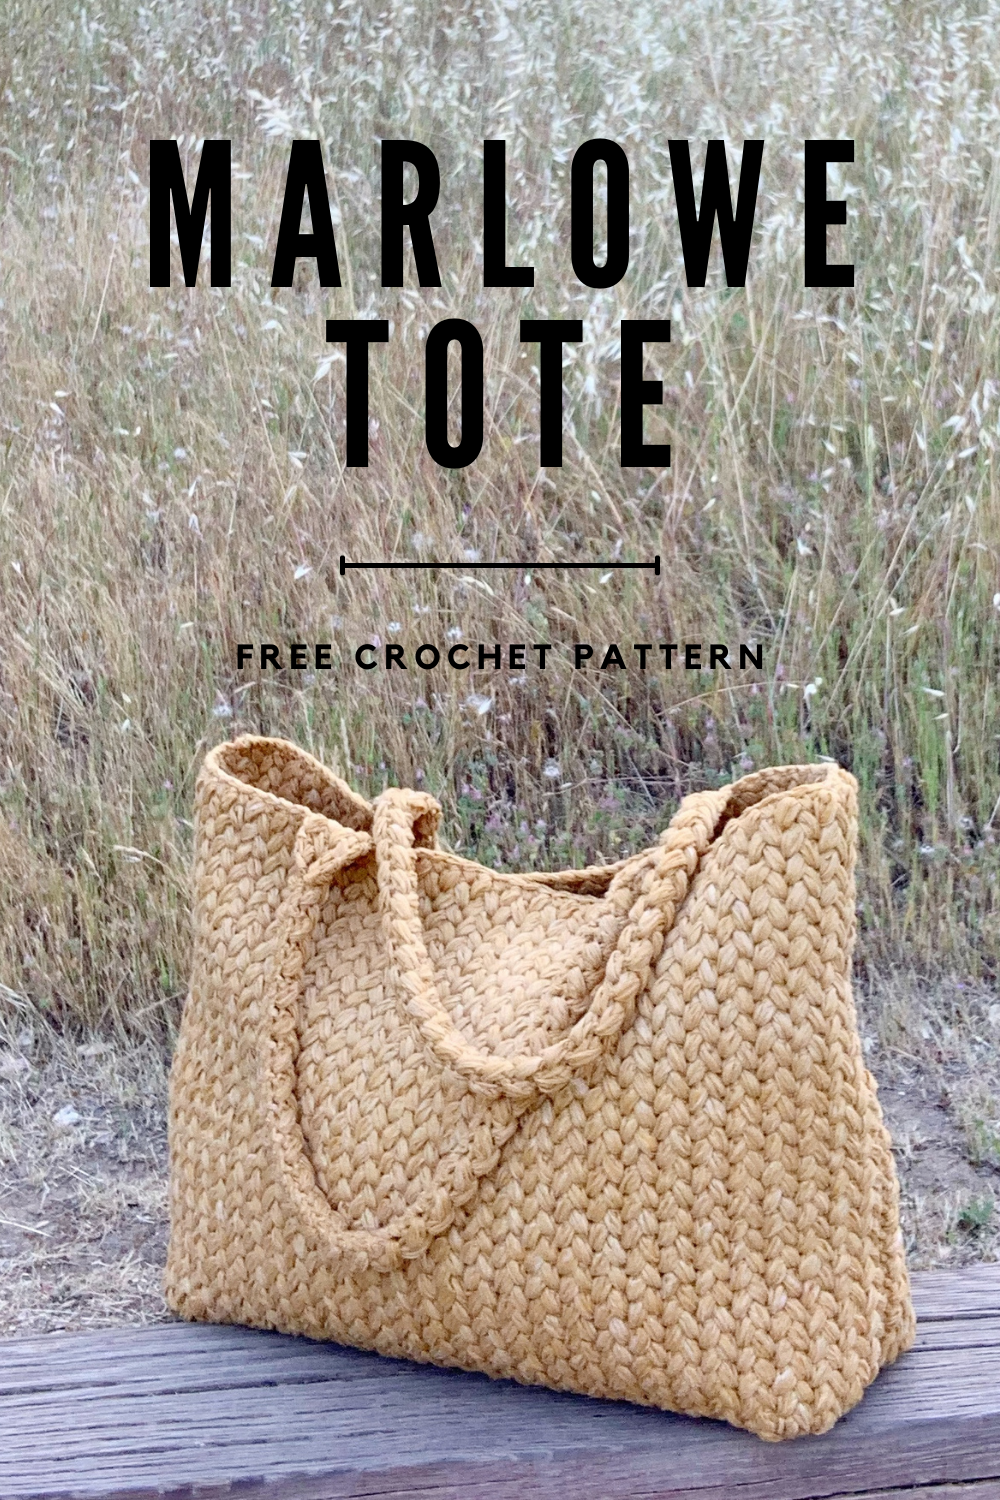 Straw Bag: Free Crochet Pattern  Crochet purse patterns, Crochet bag  pattern, Crochet handbags patterns